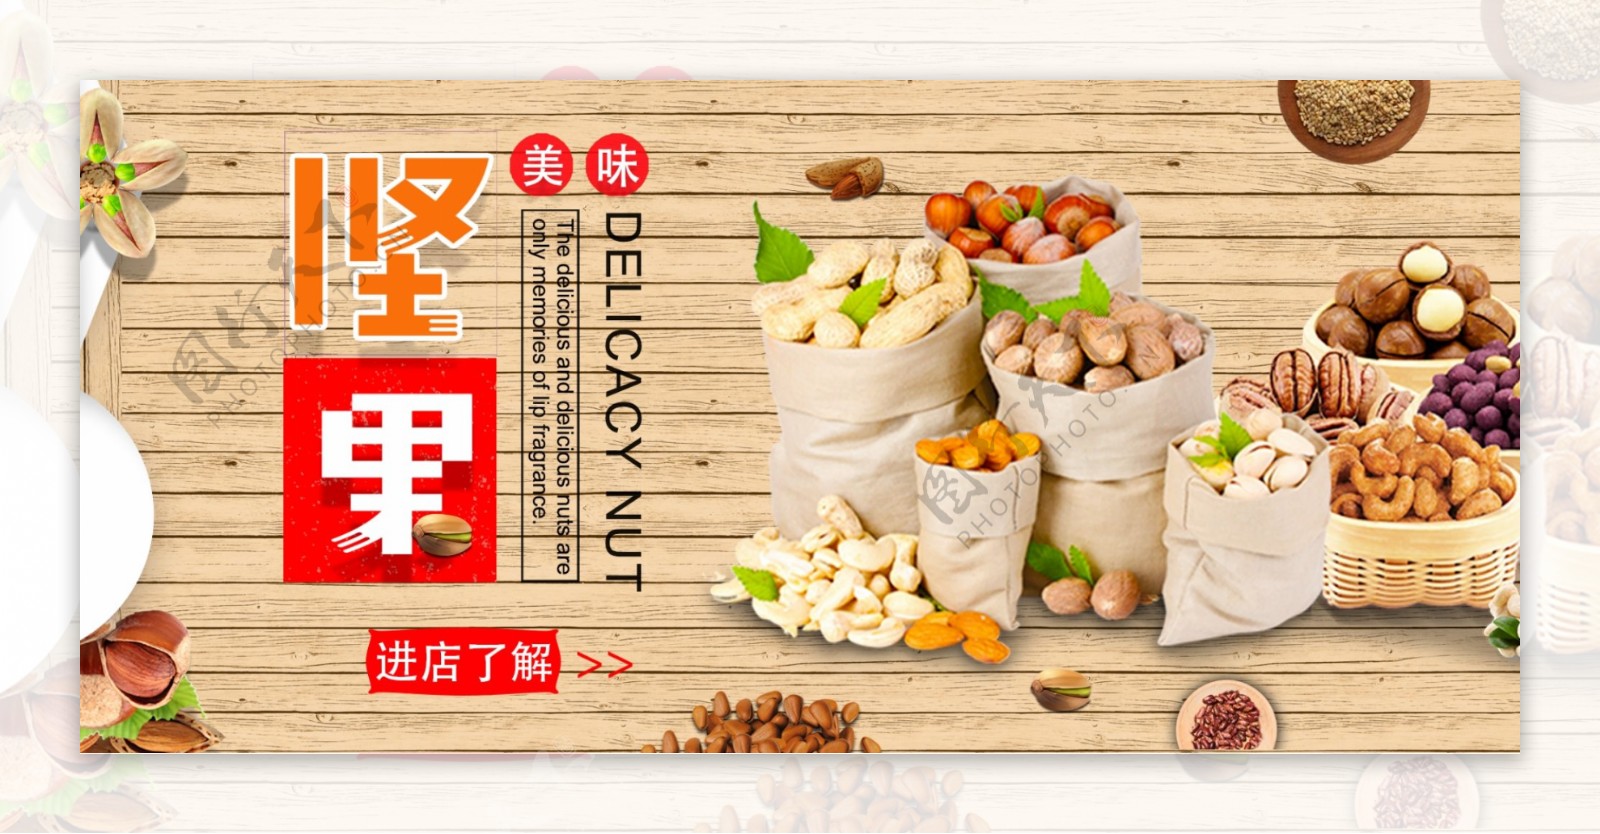 简约木纹坚果食品零食海报banner